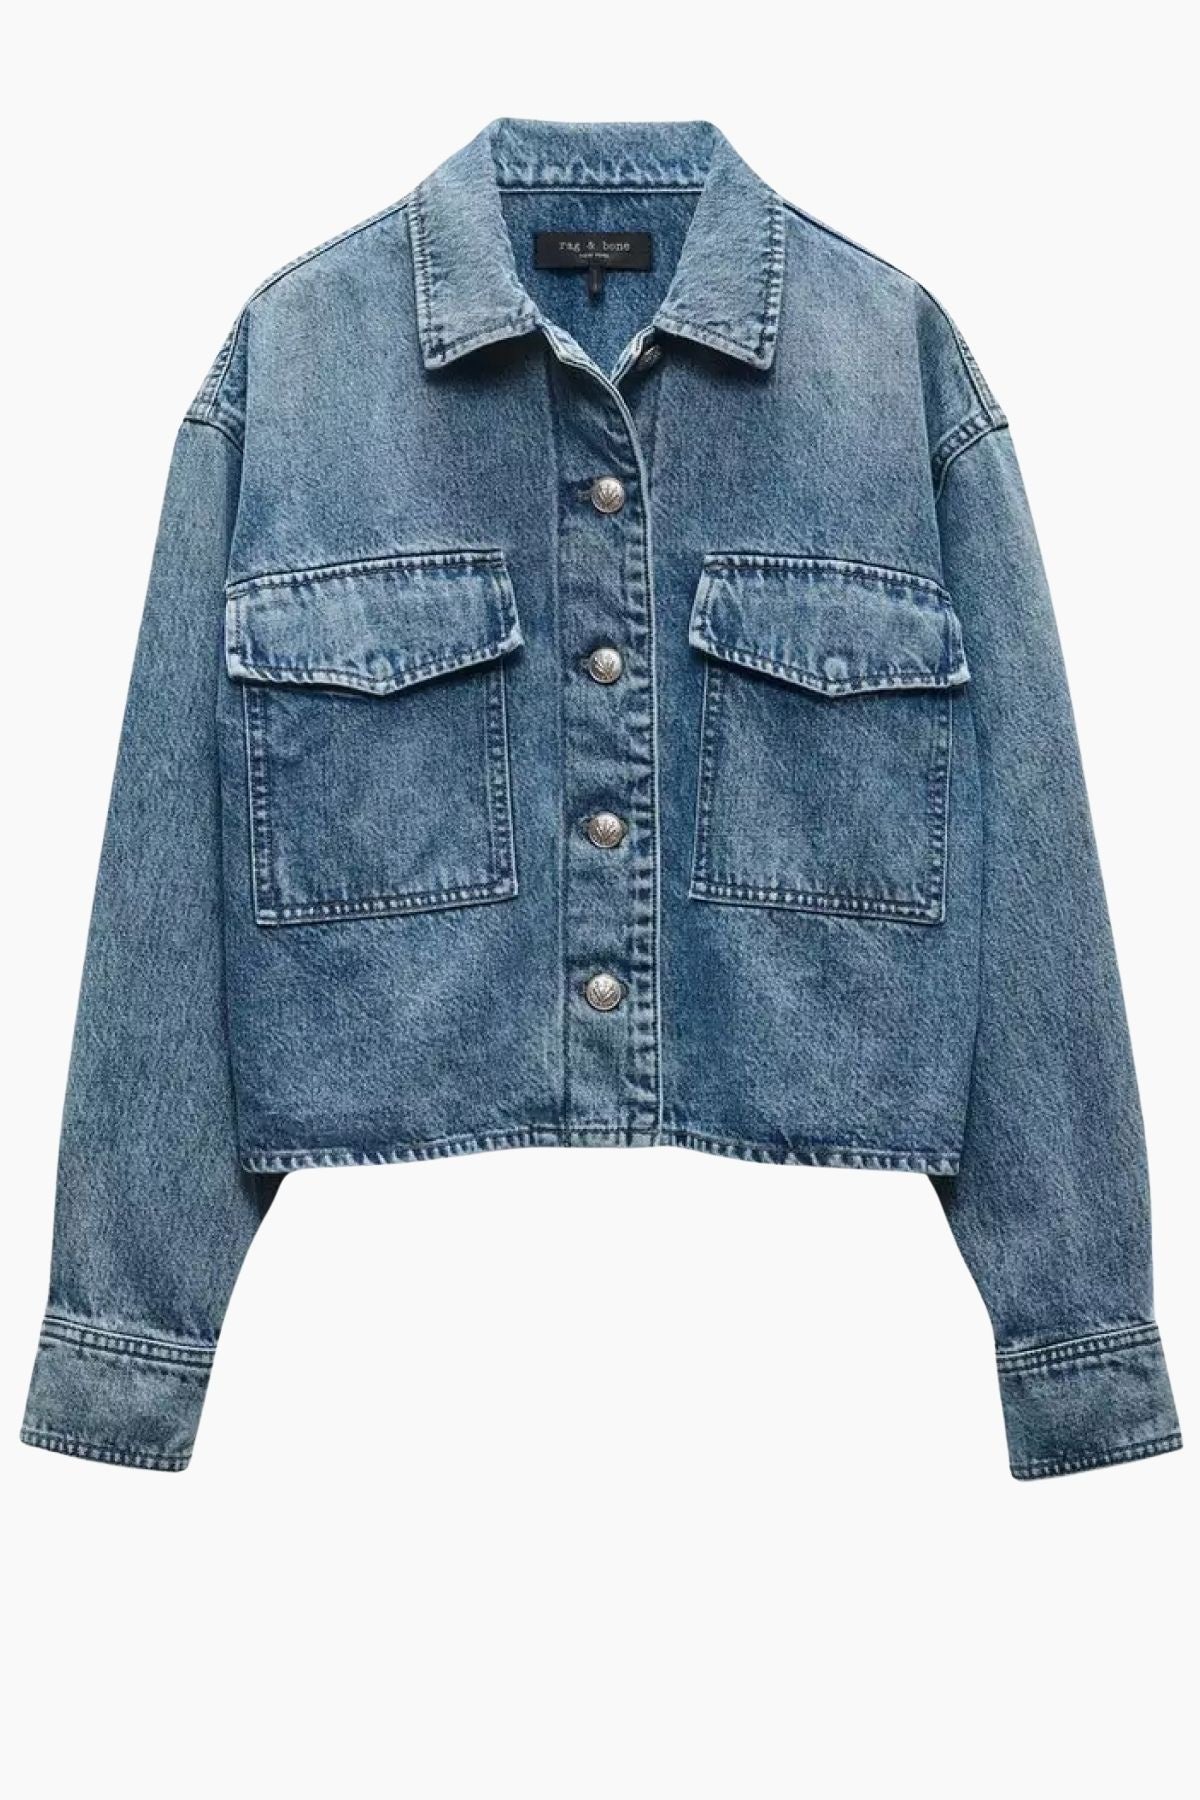 Rag & Bone Jaiden Denim Shirt Jacket - Elle